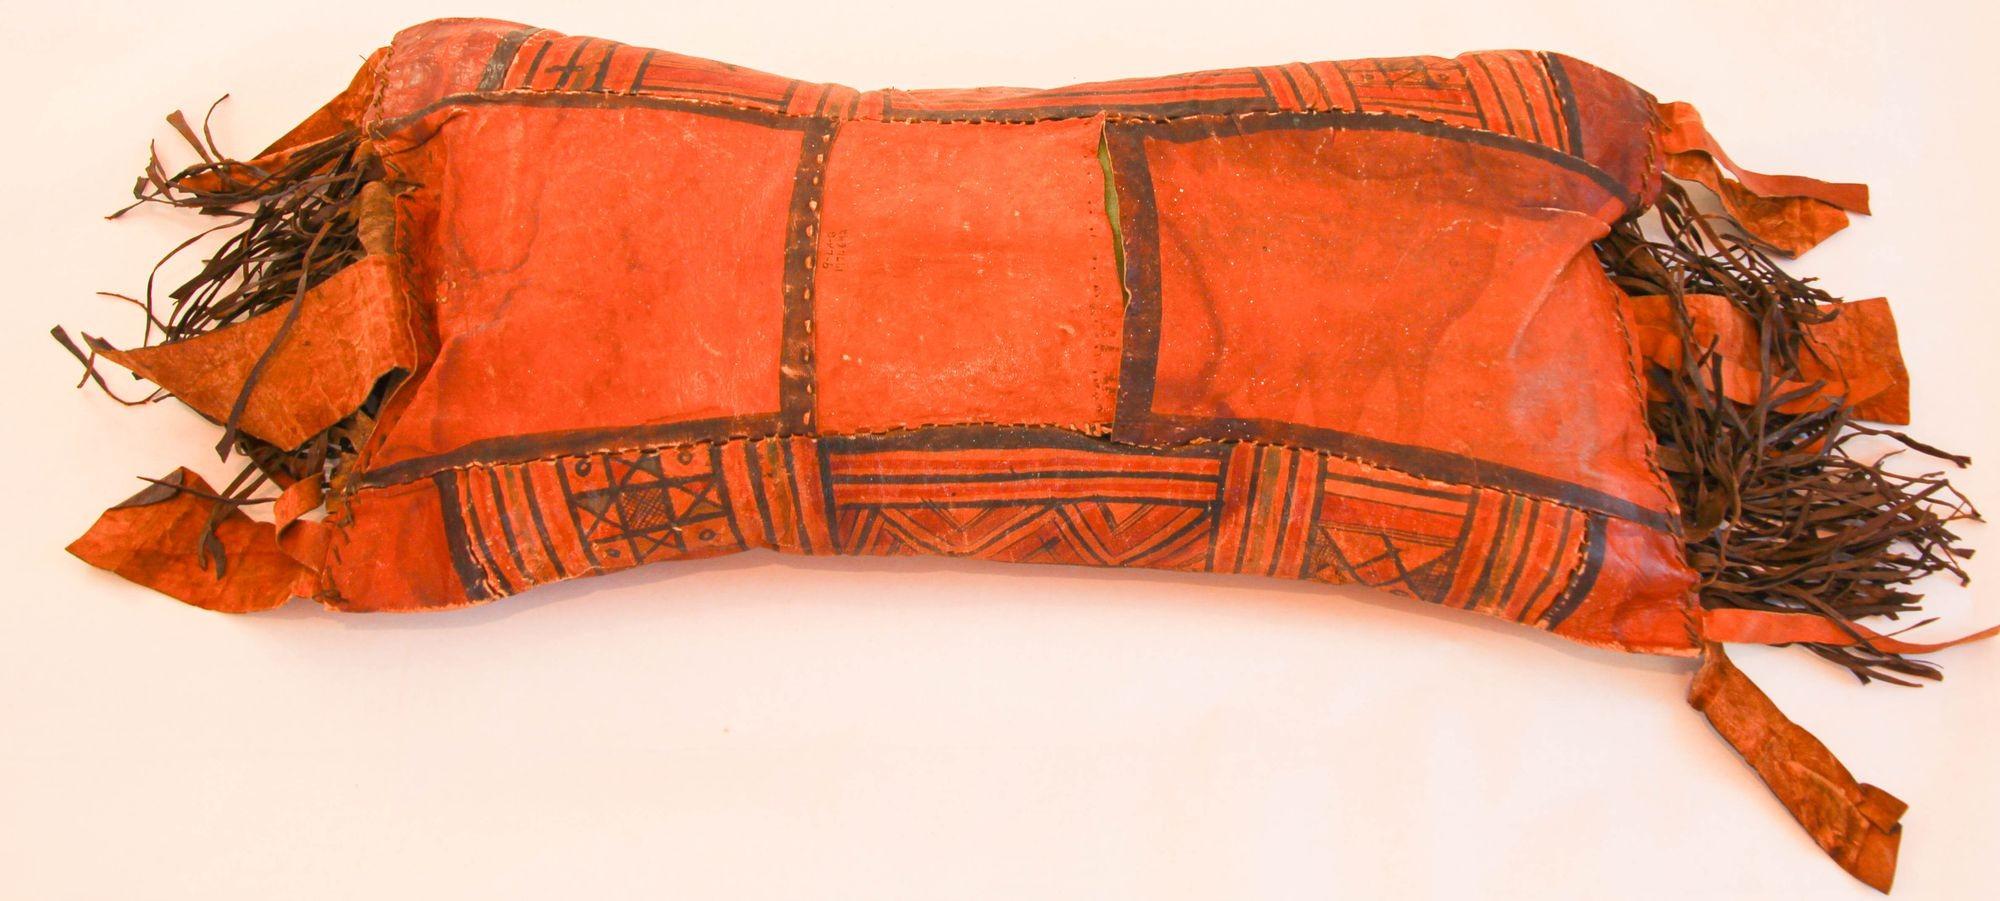 Grand oreiller africain touareg en cuir travaillé à la main.
Couleurs superbes, peint à la main avec un design géométrique tribal avec de longues franges de cuir de chaque côté.
Fabriqué à la main en Afrique avec des morceaux de cuir cousus ensemble